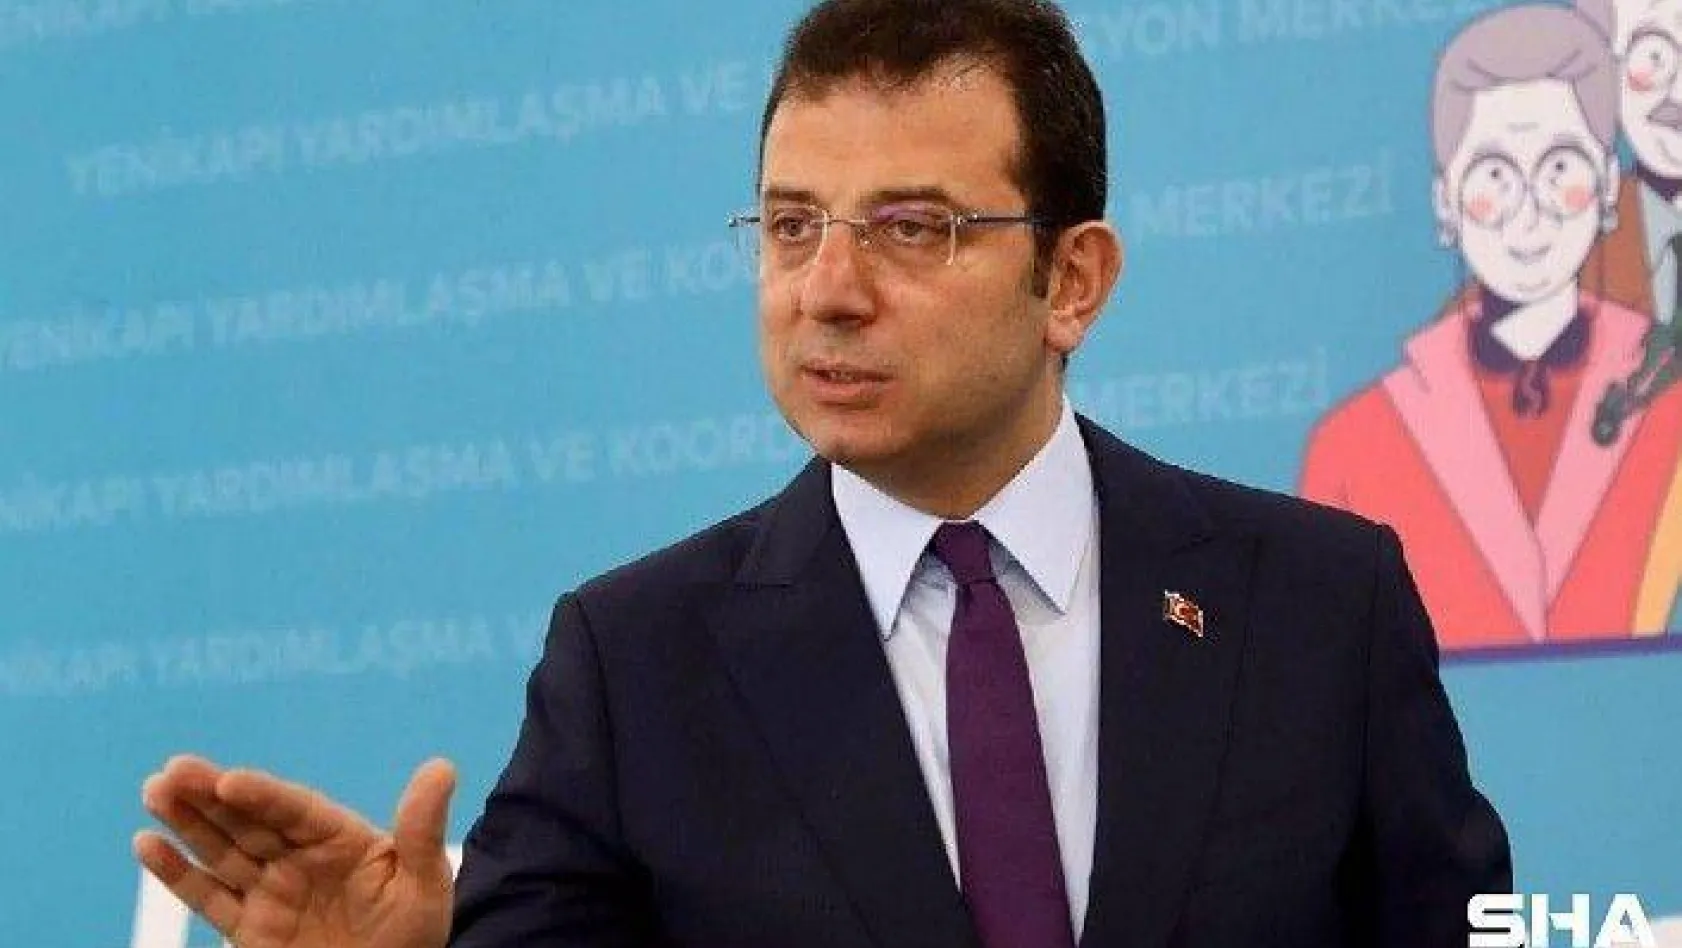 İstanbul Cumhuriyet Başsavcılığı'ndan Ekrem İmamoğlu açıklaması